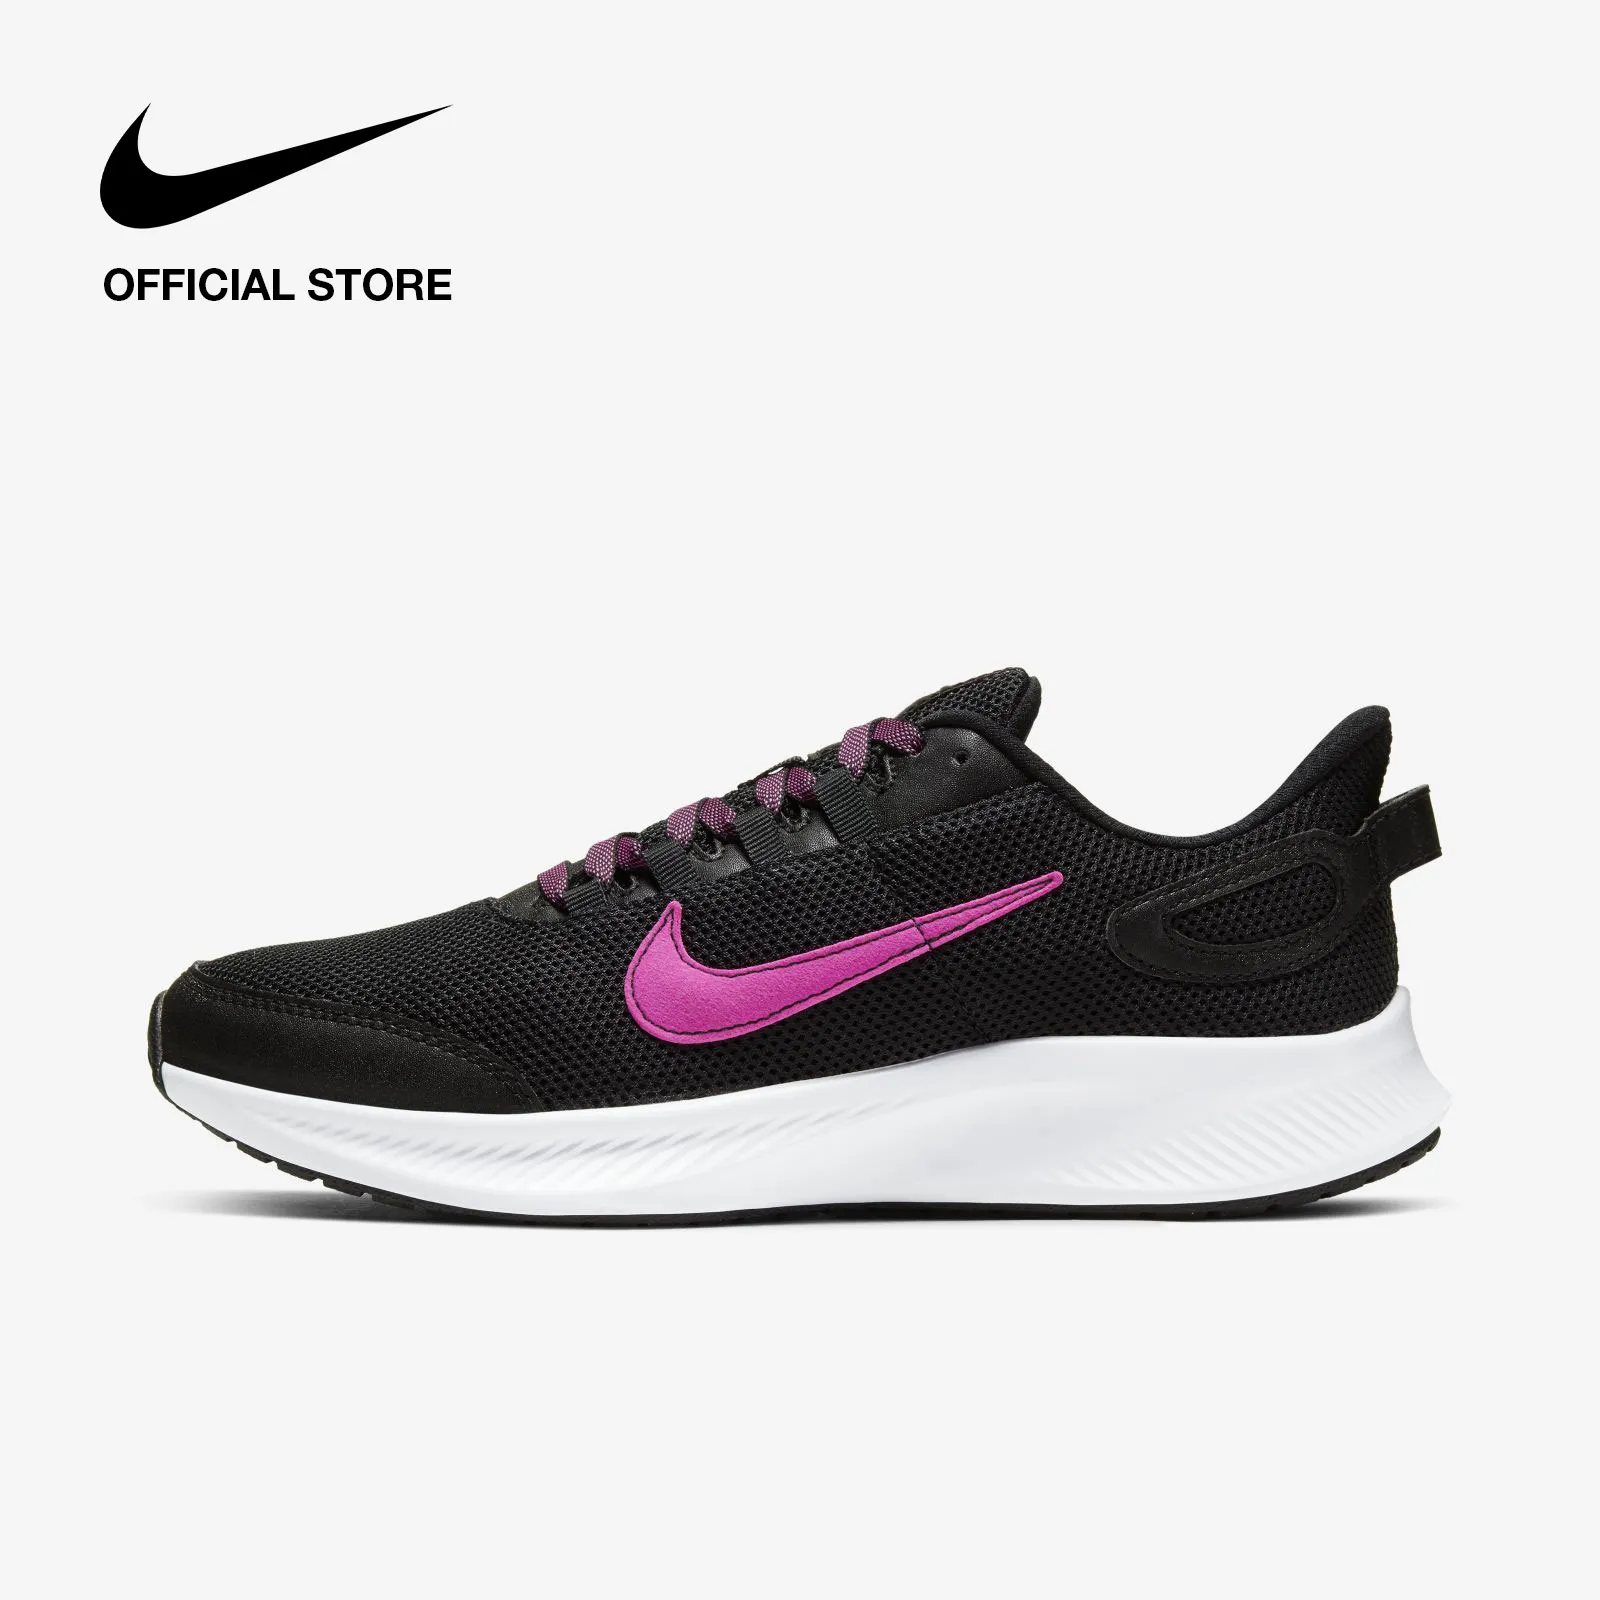 Nike Women's Run All Day 2 Running Shoes - Black ไนกี้ รองเท้าวิ่งผู้หญิง รัน ออล เดย์ 2 - สีดำ